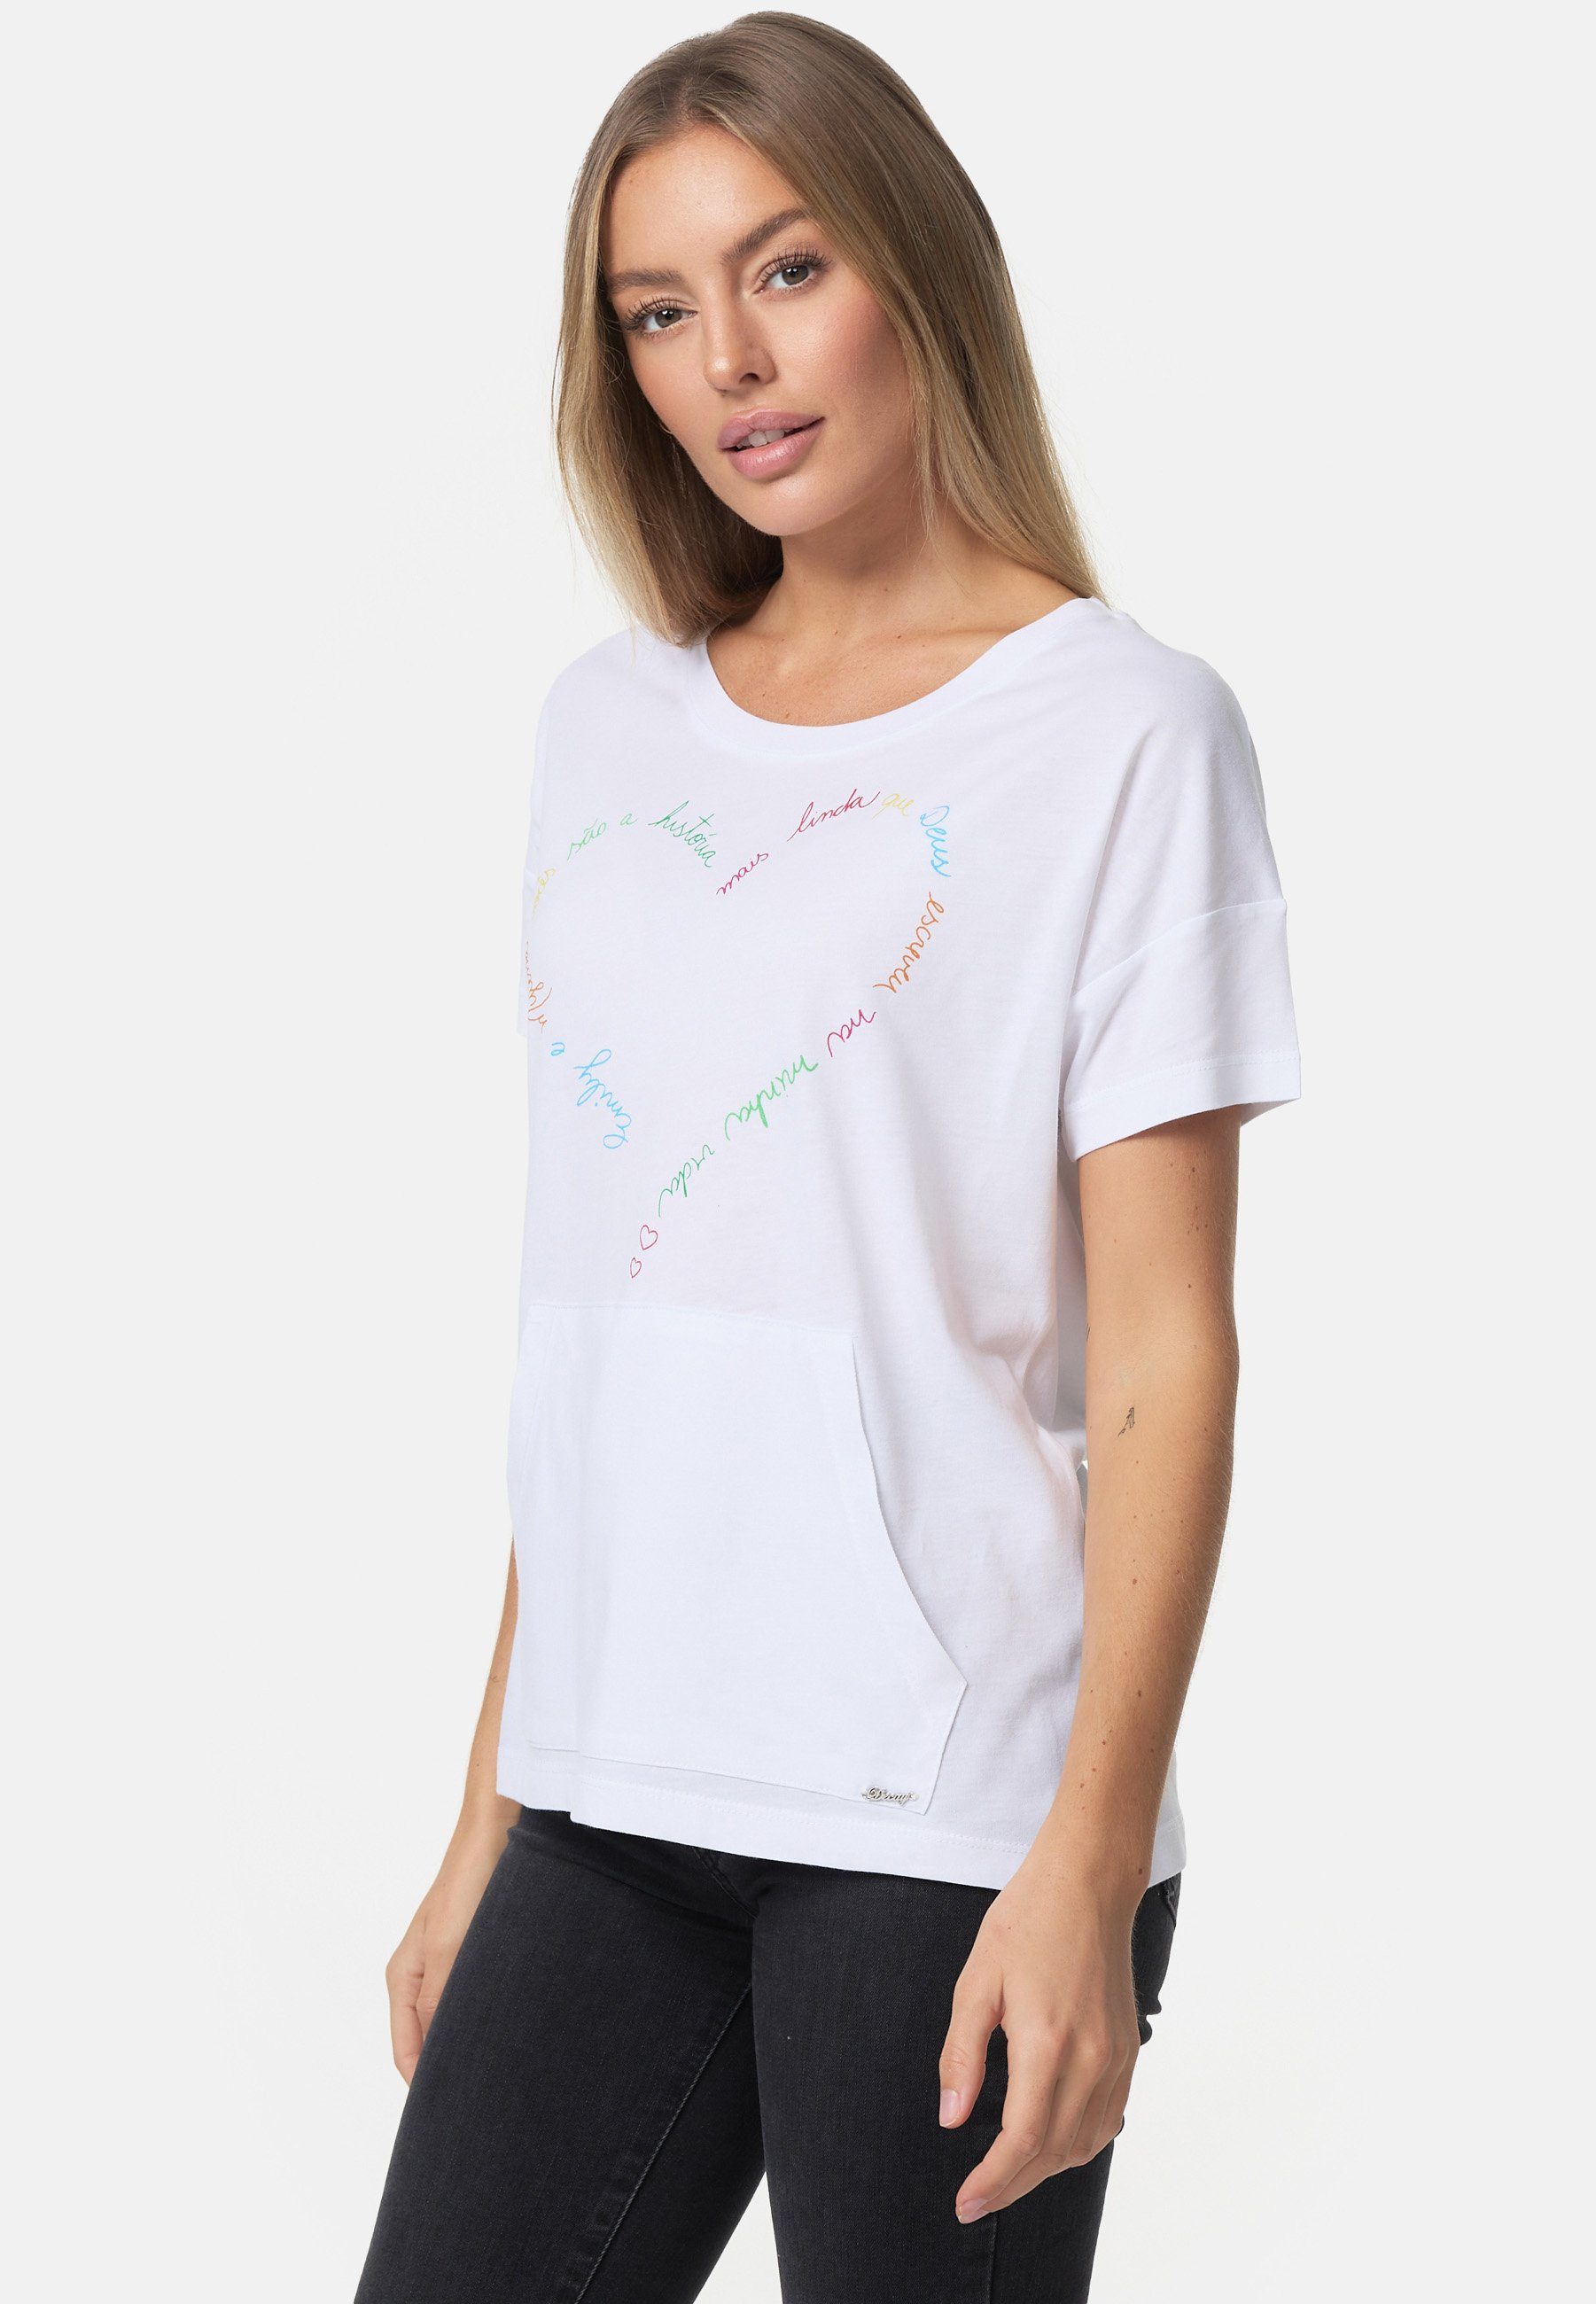 Decay mit T-Shirt Herz-Print schönem